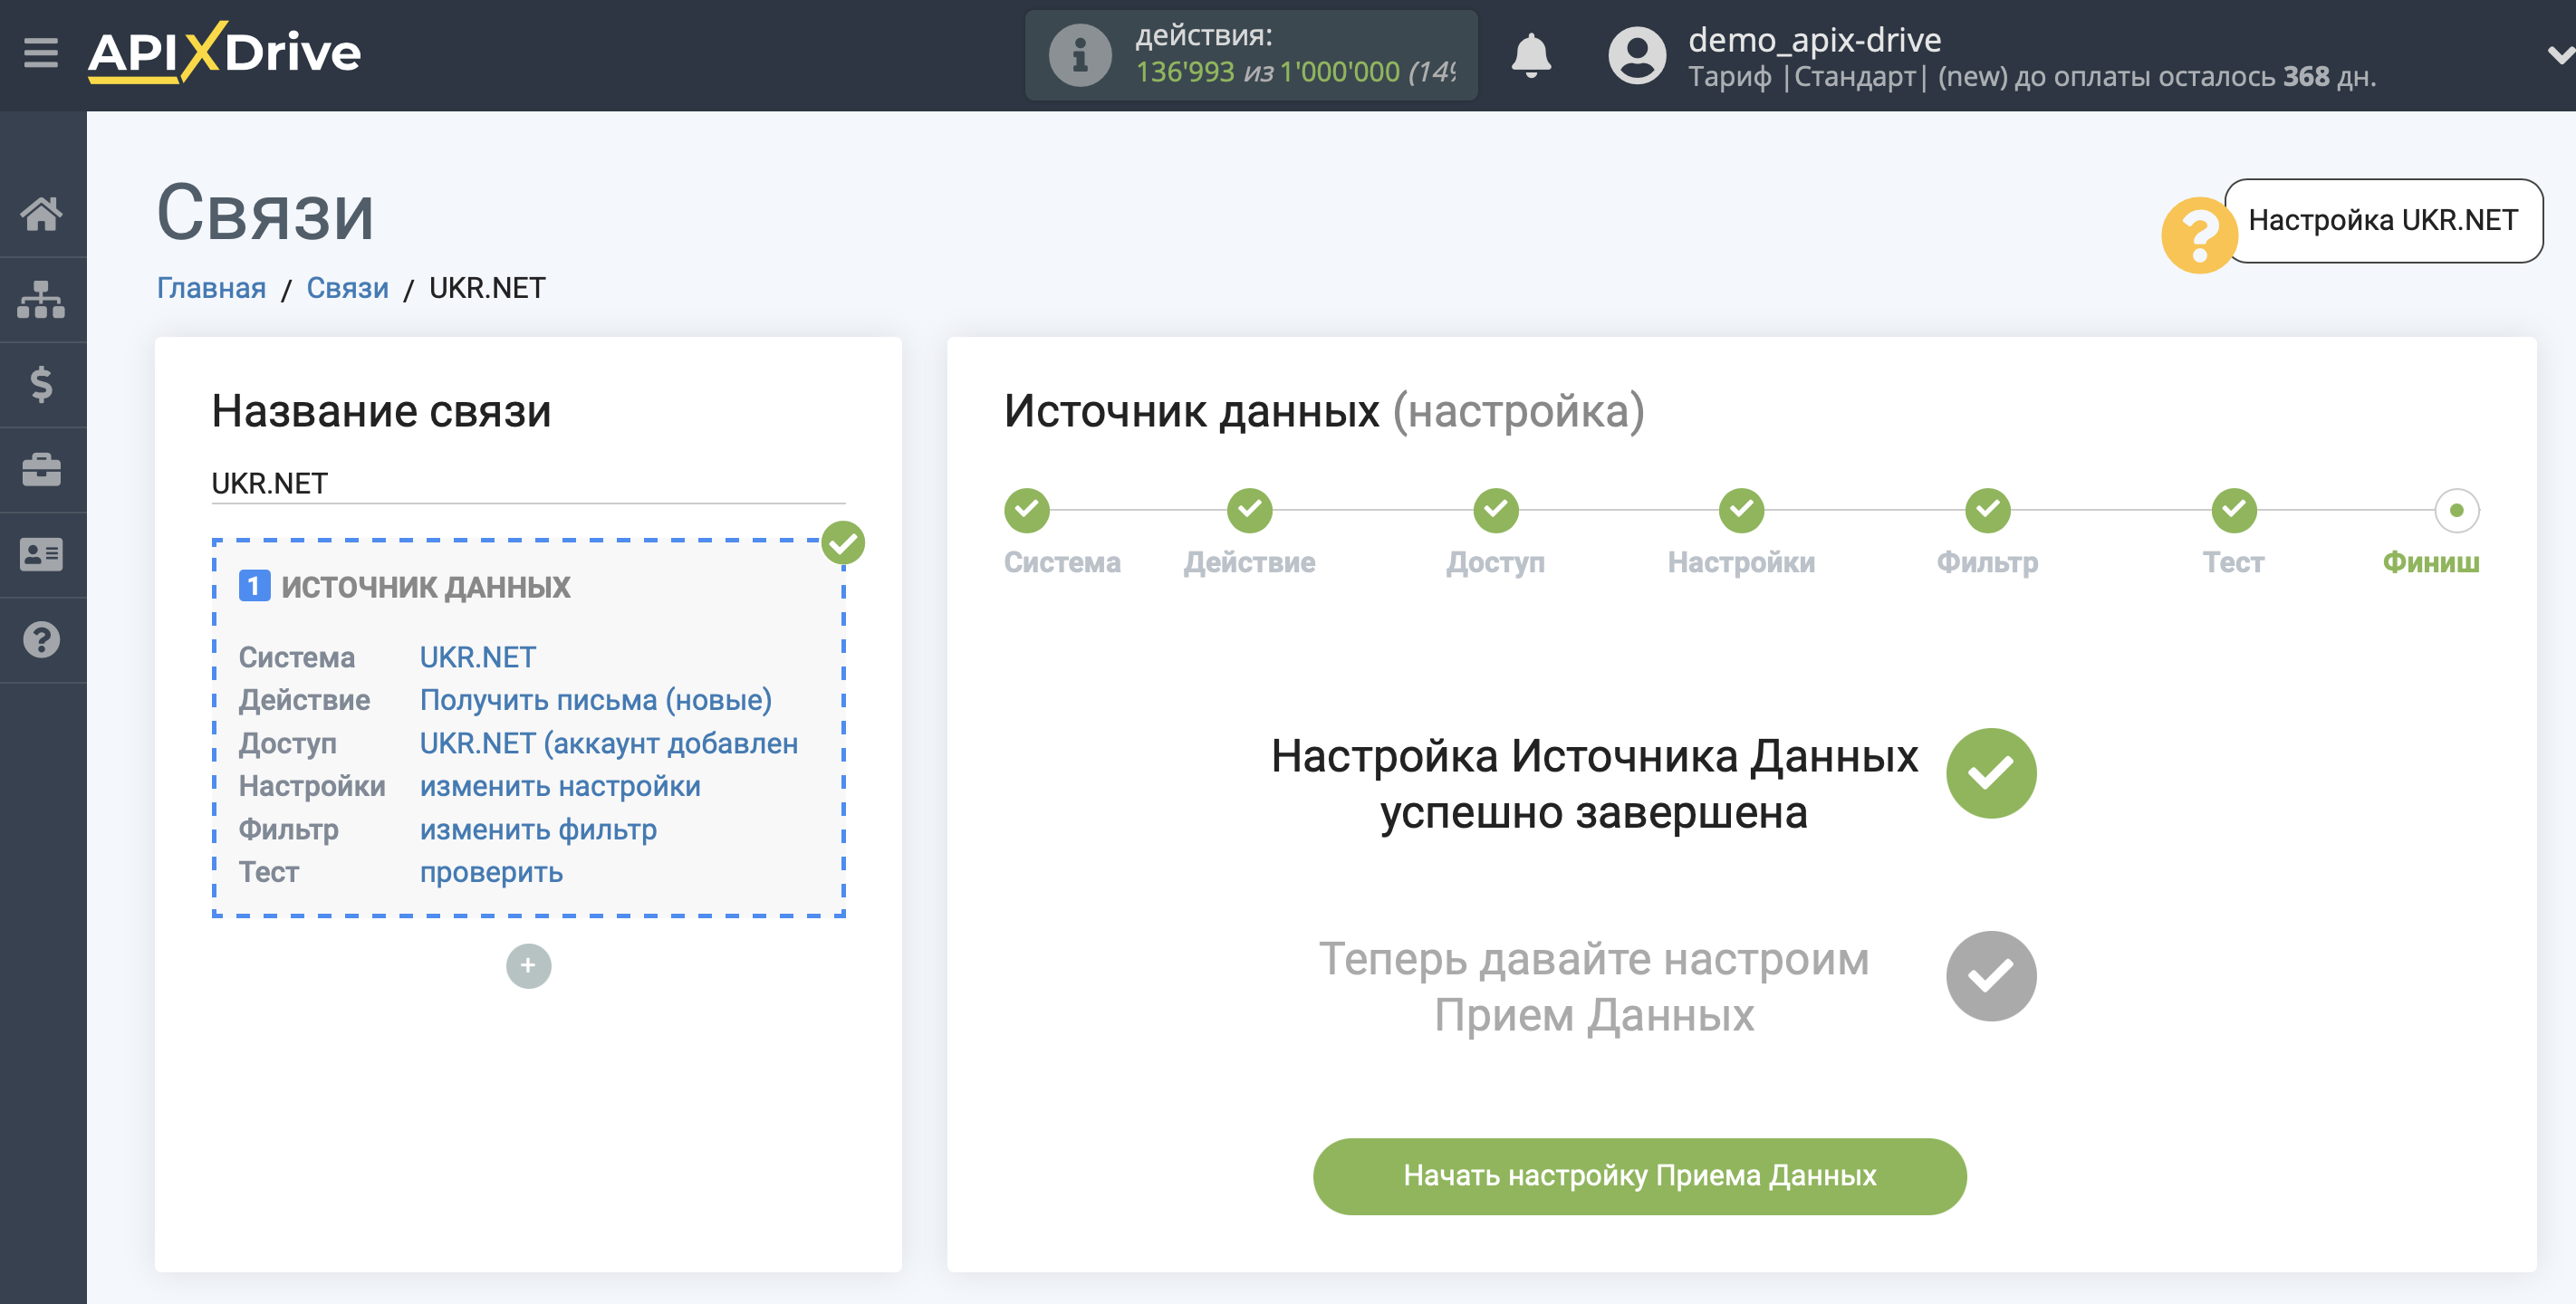 Налаштування UKR.NET | Перехід до налаштування приймача даних